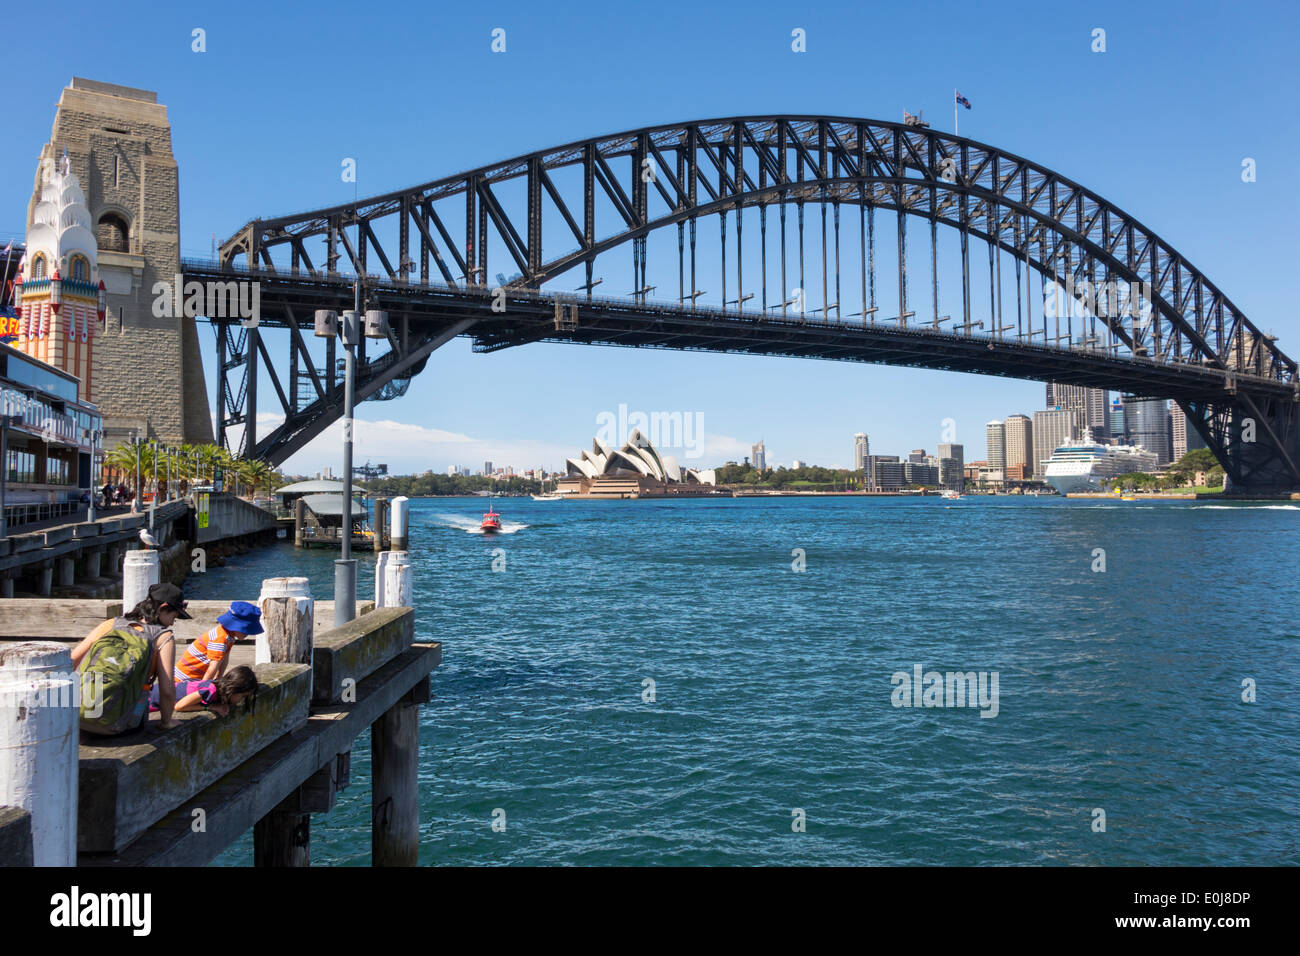 Sydney Australie, Milsons point, Luna Park, divertissement, Harbour Bridge, port, Opéra, AU140310075 Banque D'Images